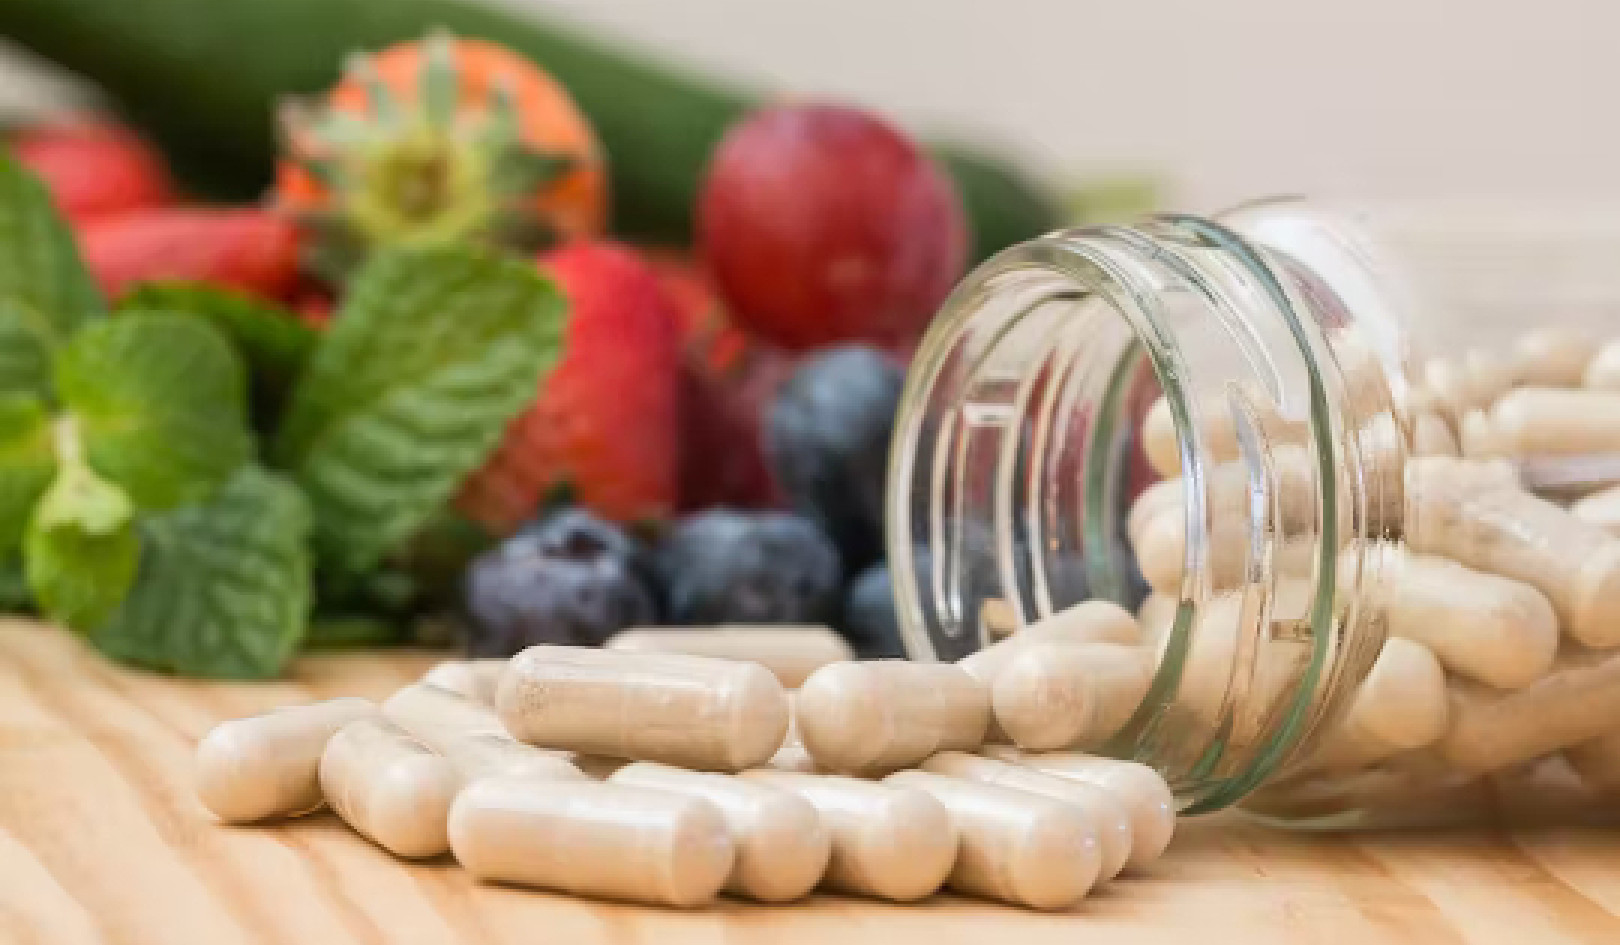 Tomando vitaminas e suplementos? O que você precisa saber agora